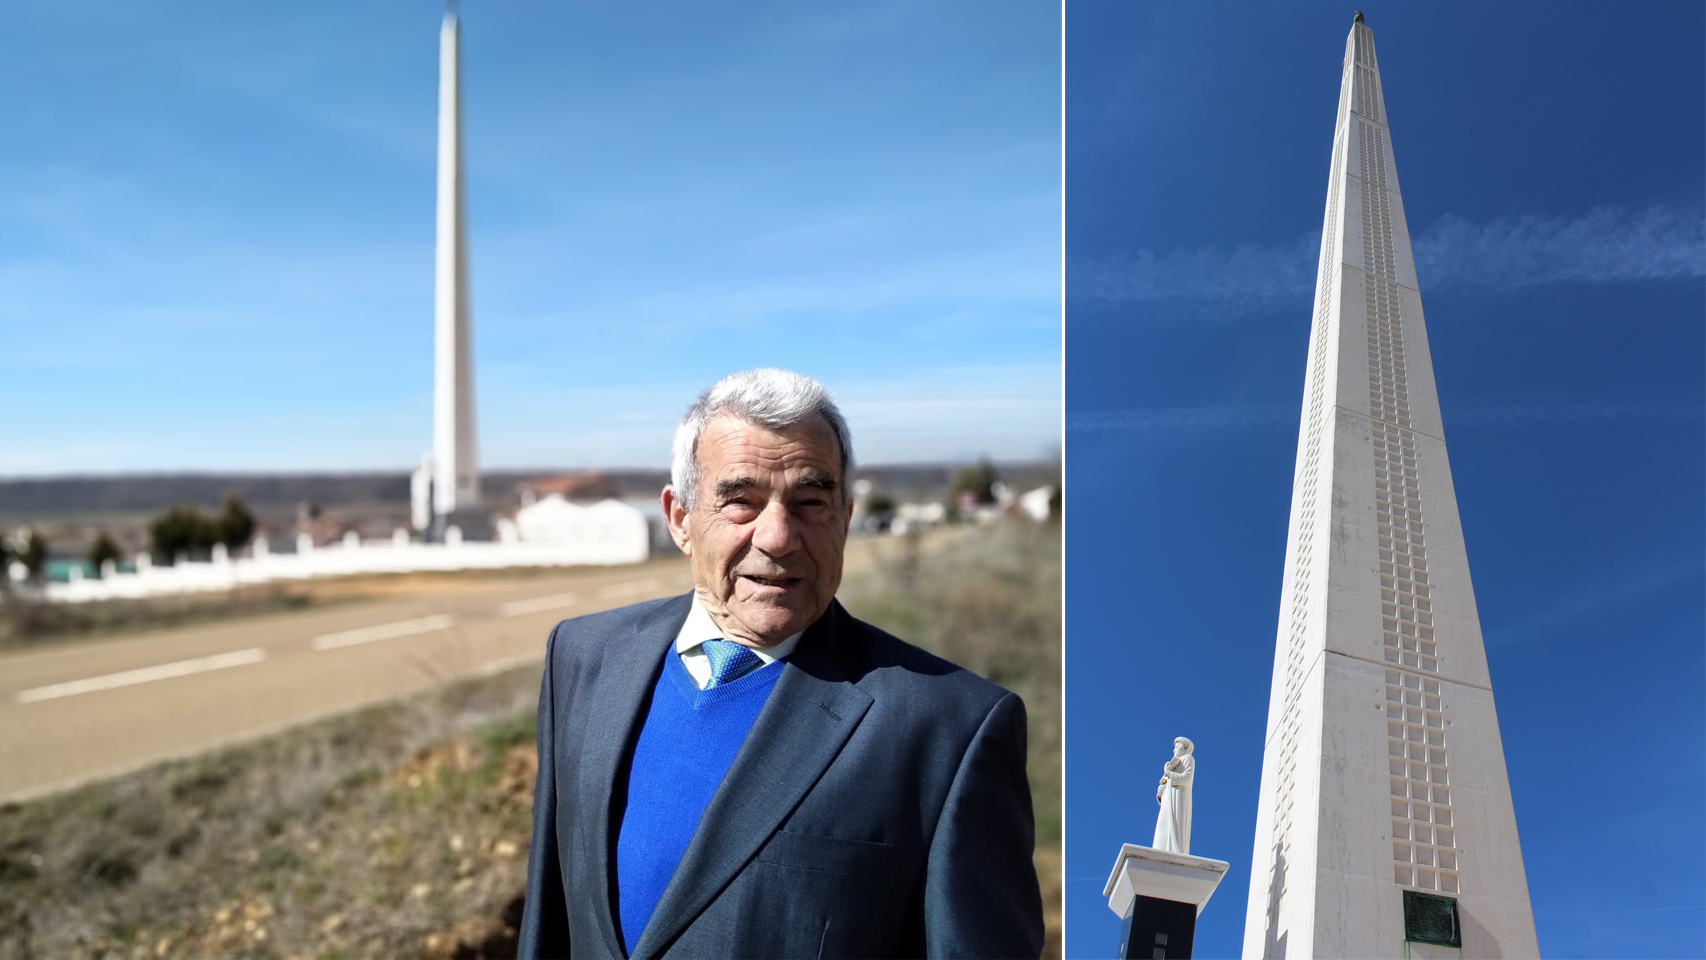 Eutimio construyó un obelisco de 45 metros para honrar a su mujer.